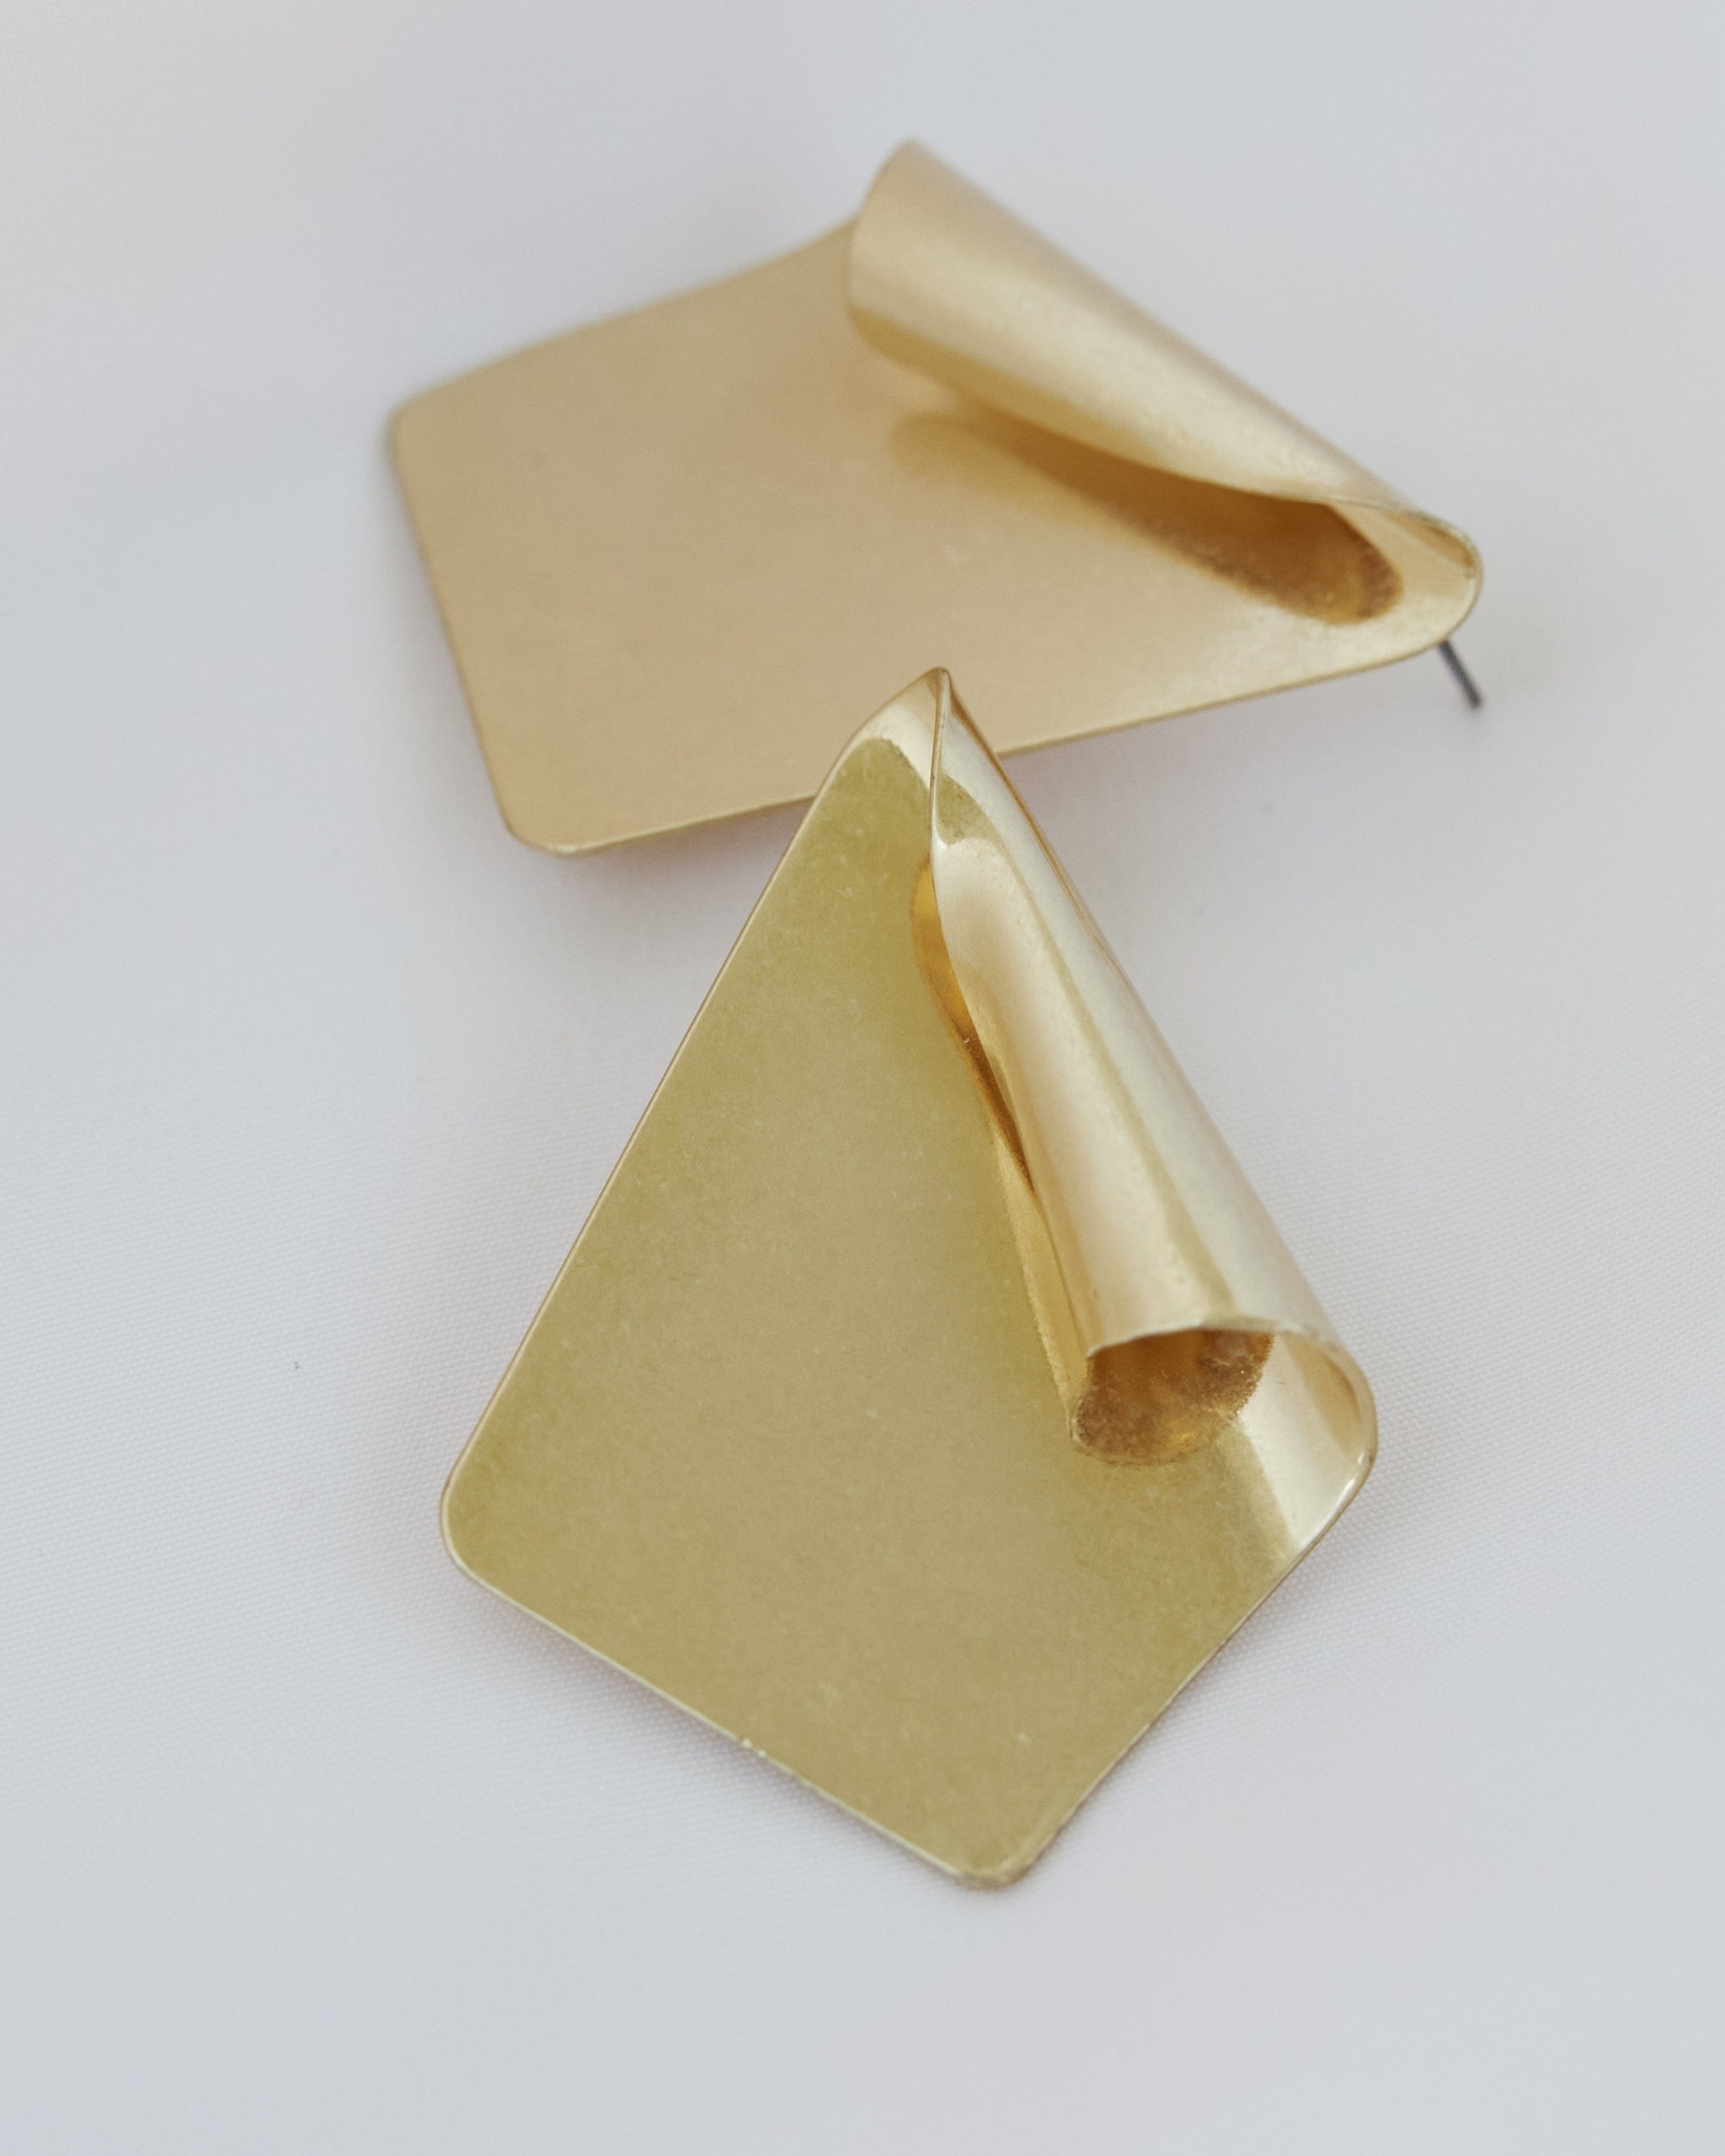 Gold earrings in shape of fan